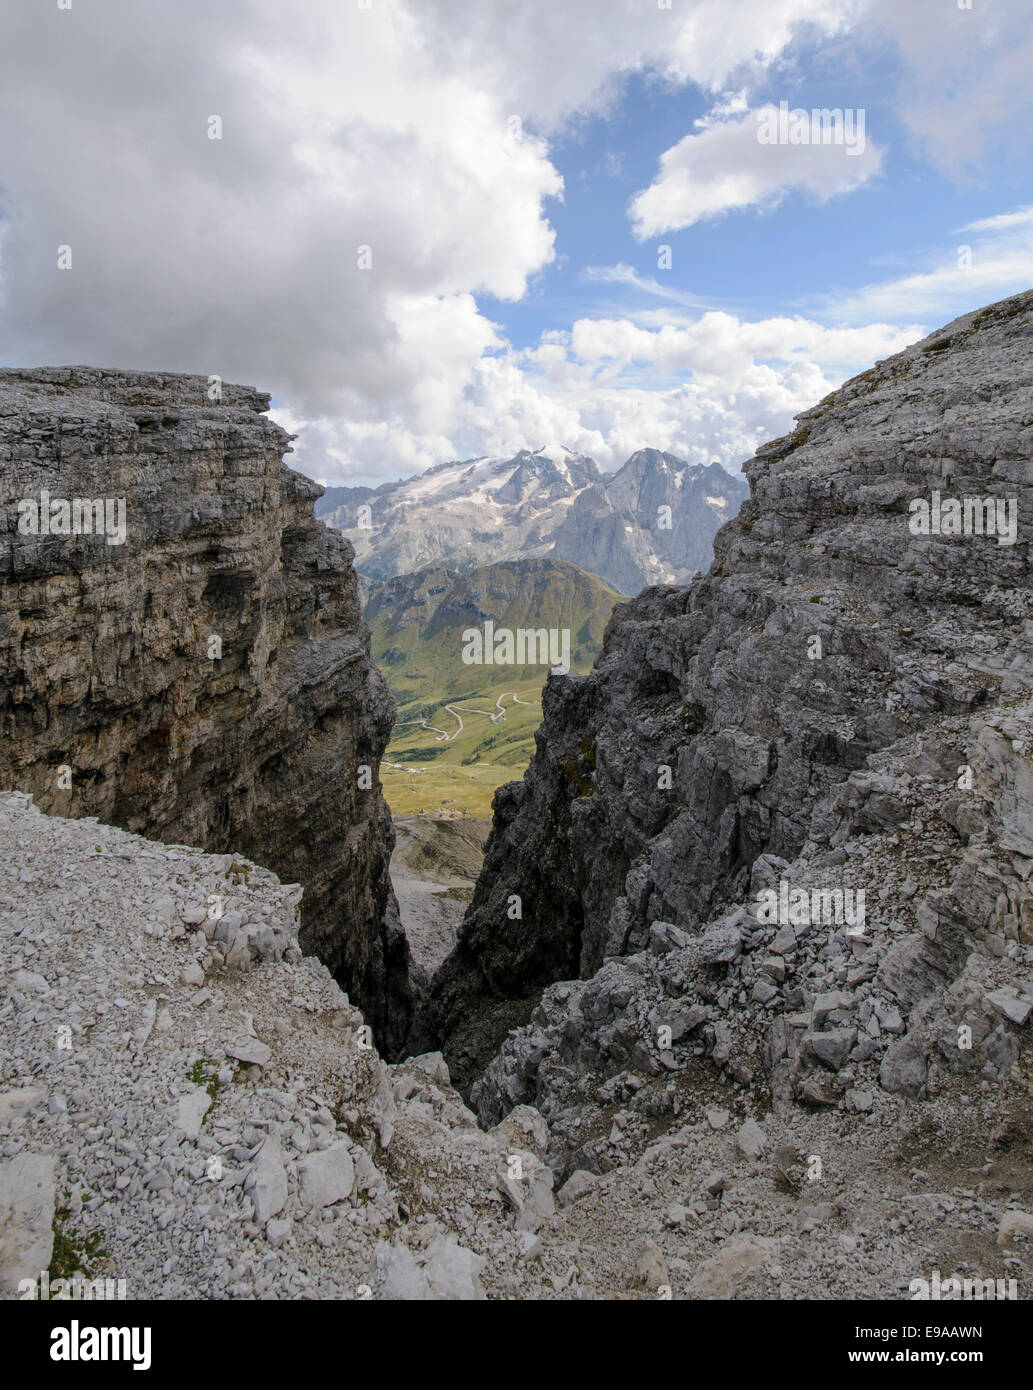 the peak of Sass Pordoi (2952m) Dolomites, italy Stock Photo